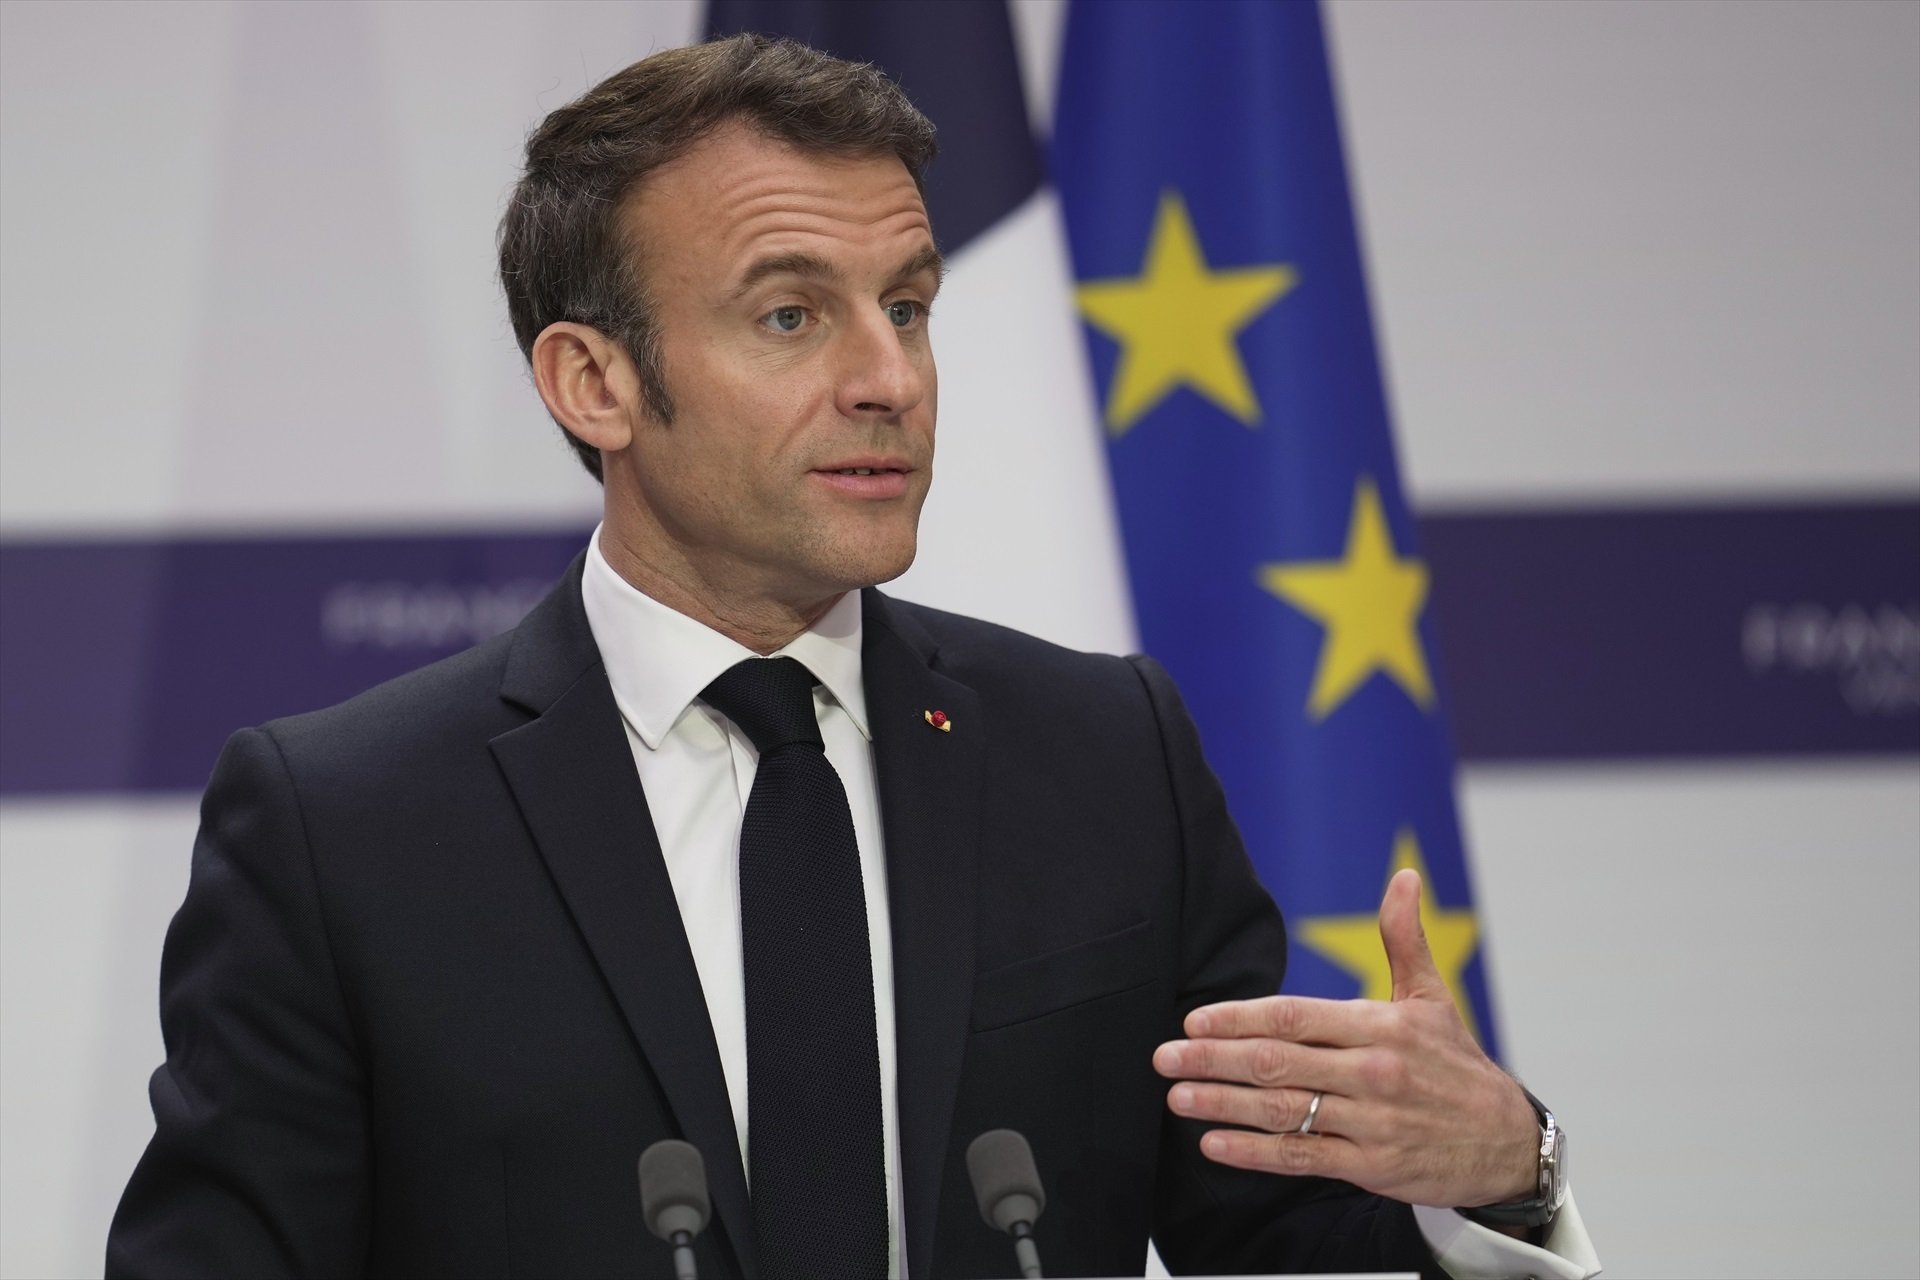 Fracassa la moció de censura contra el govern de Macron per la reforma de les pensions